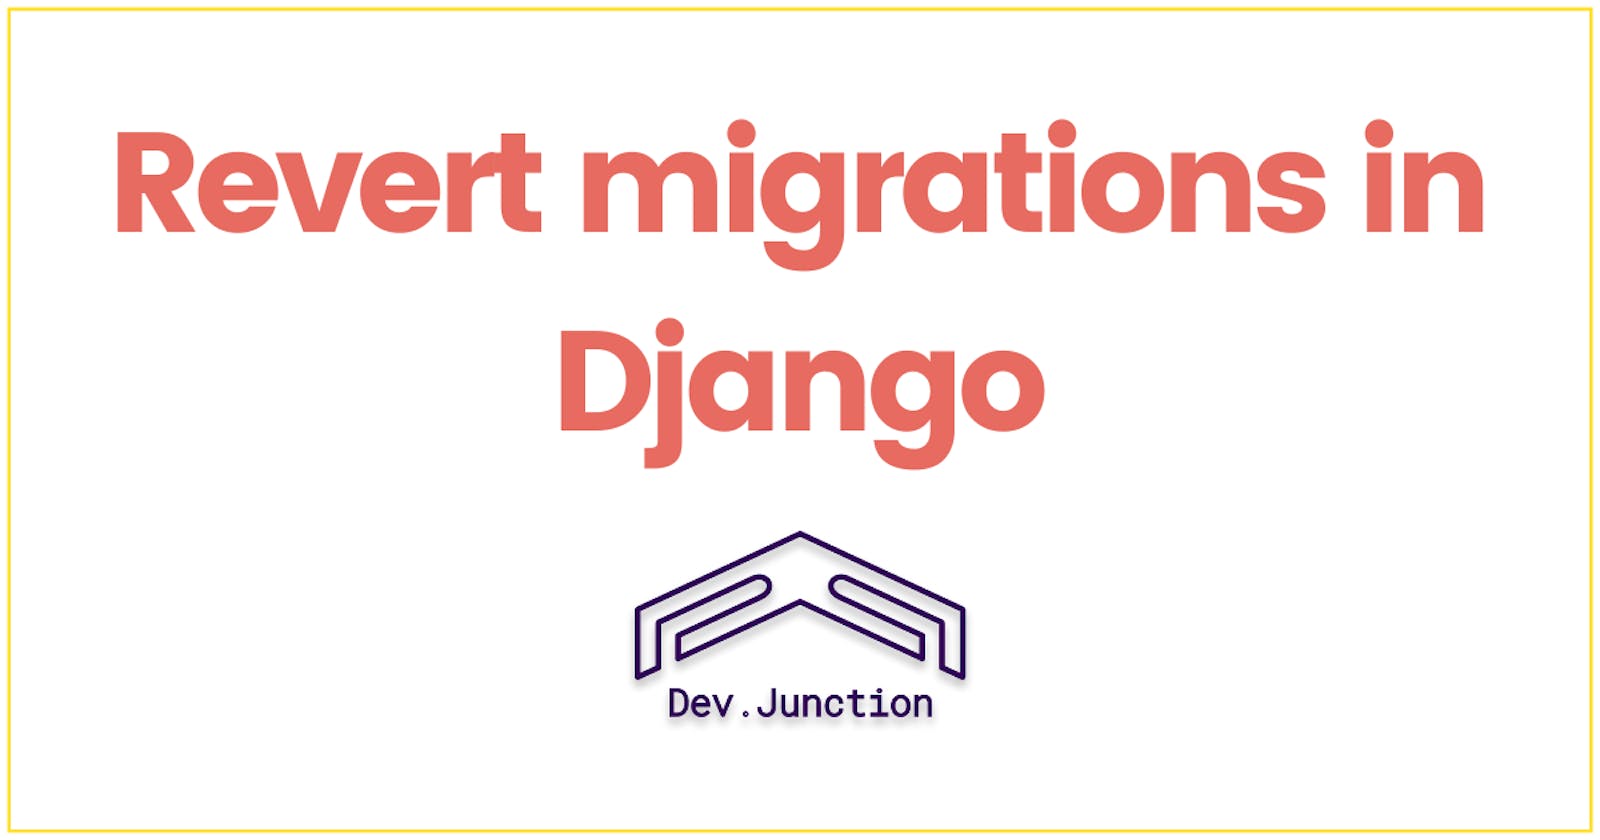 How to revert migrations in Django?